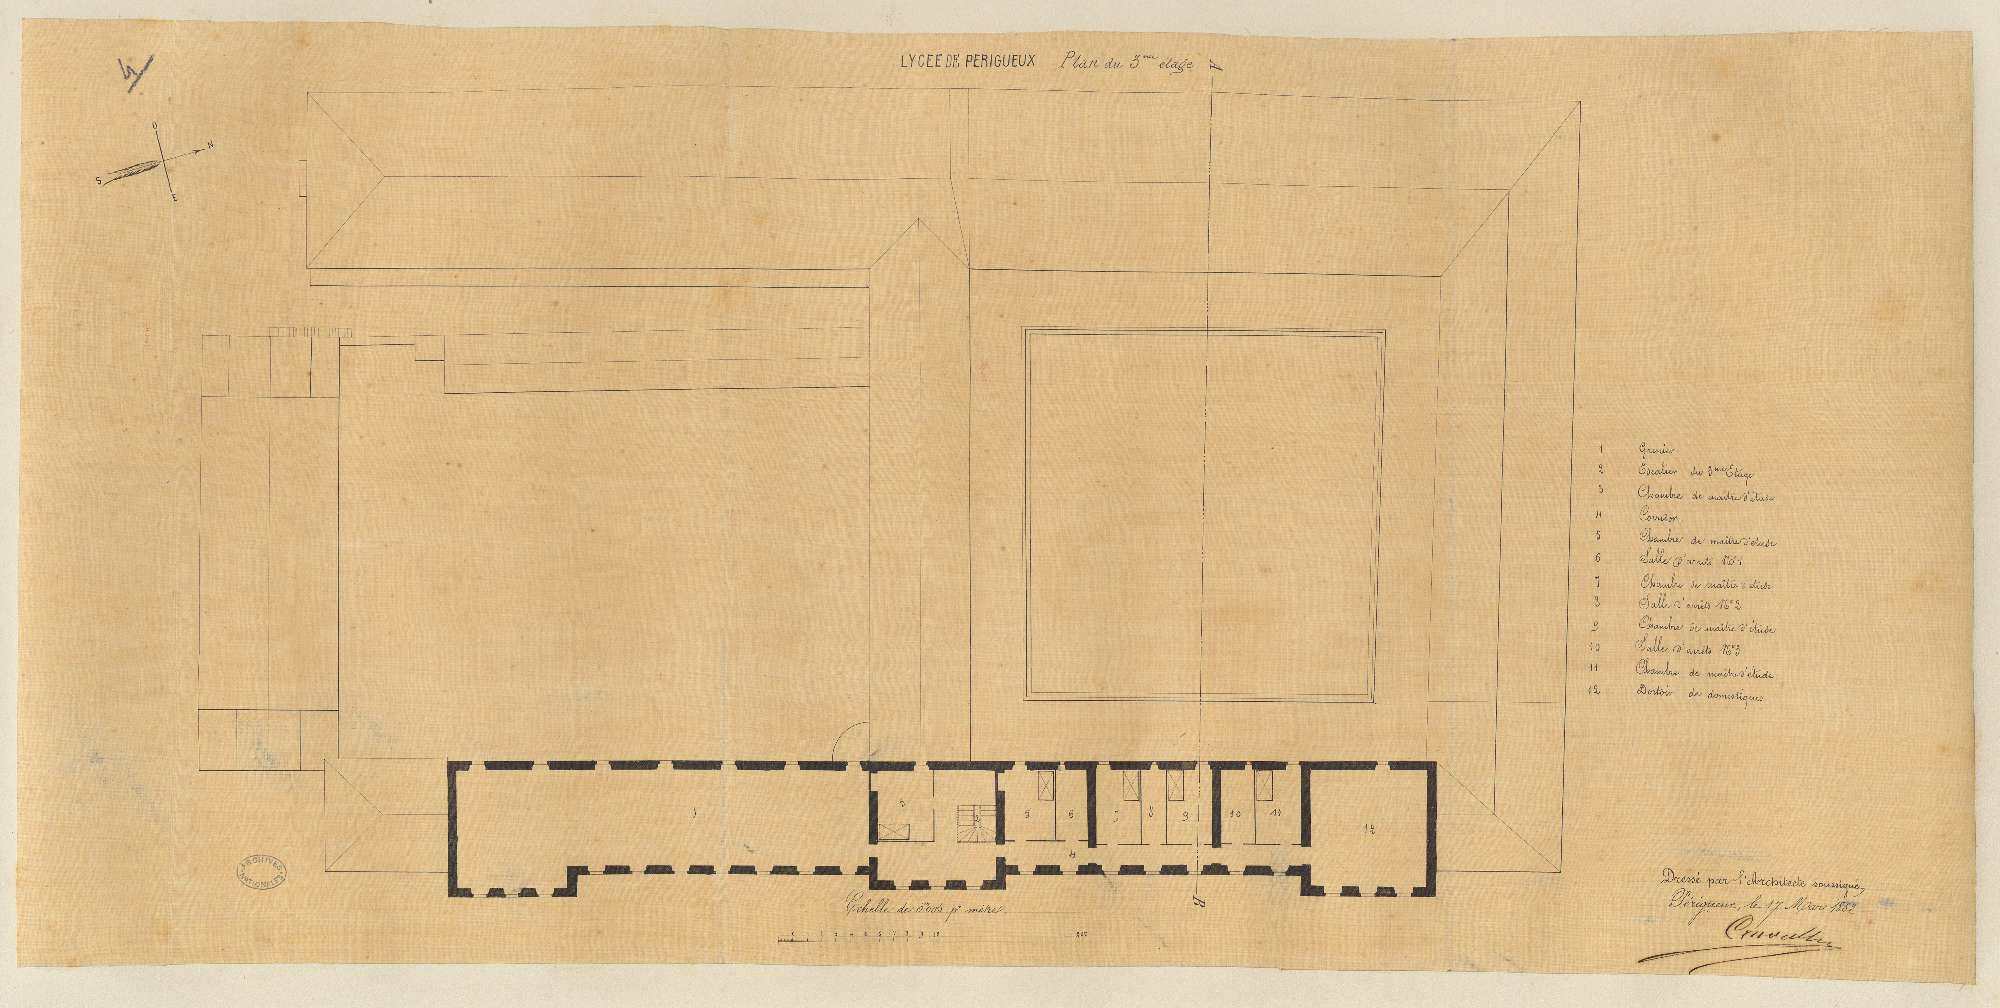 Lycée impérial. Plan du 3ème étage. 0.005 pm. Signé de l'architecte Elie Poncet Cruvelier, 17 mars 1862. (AN)